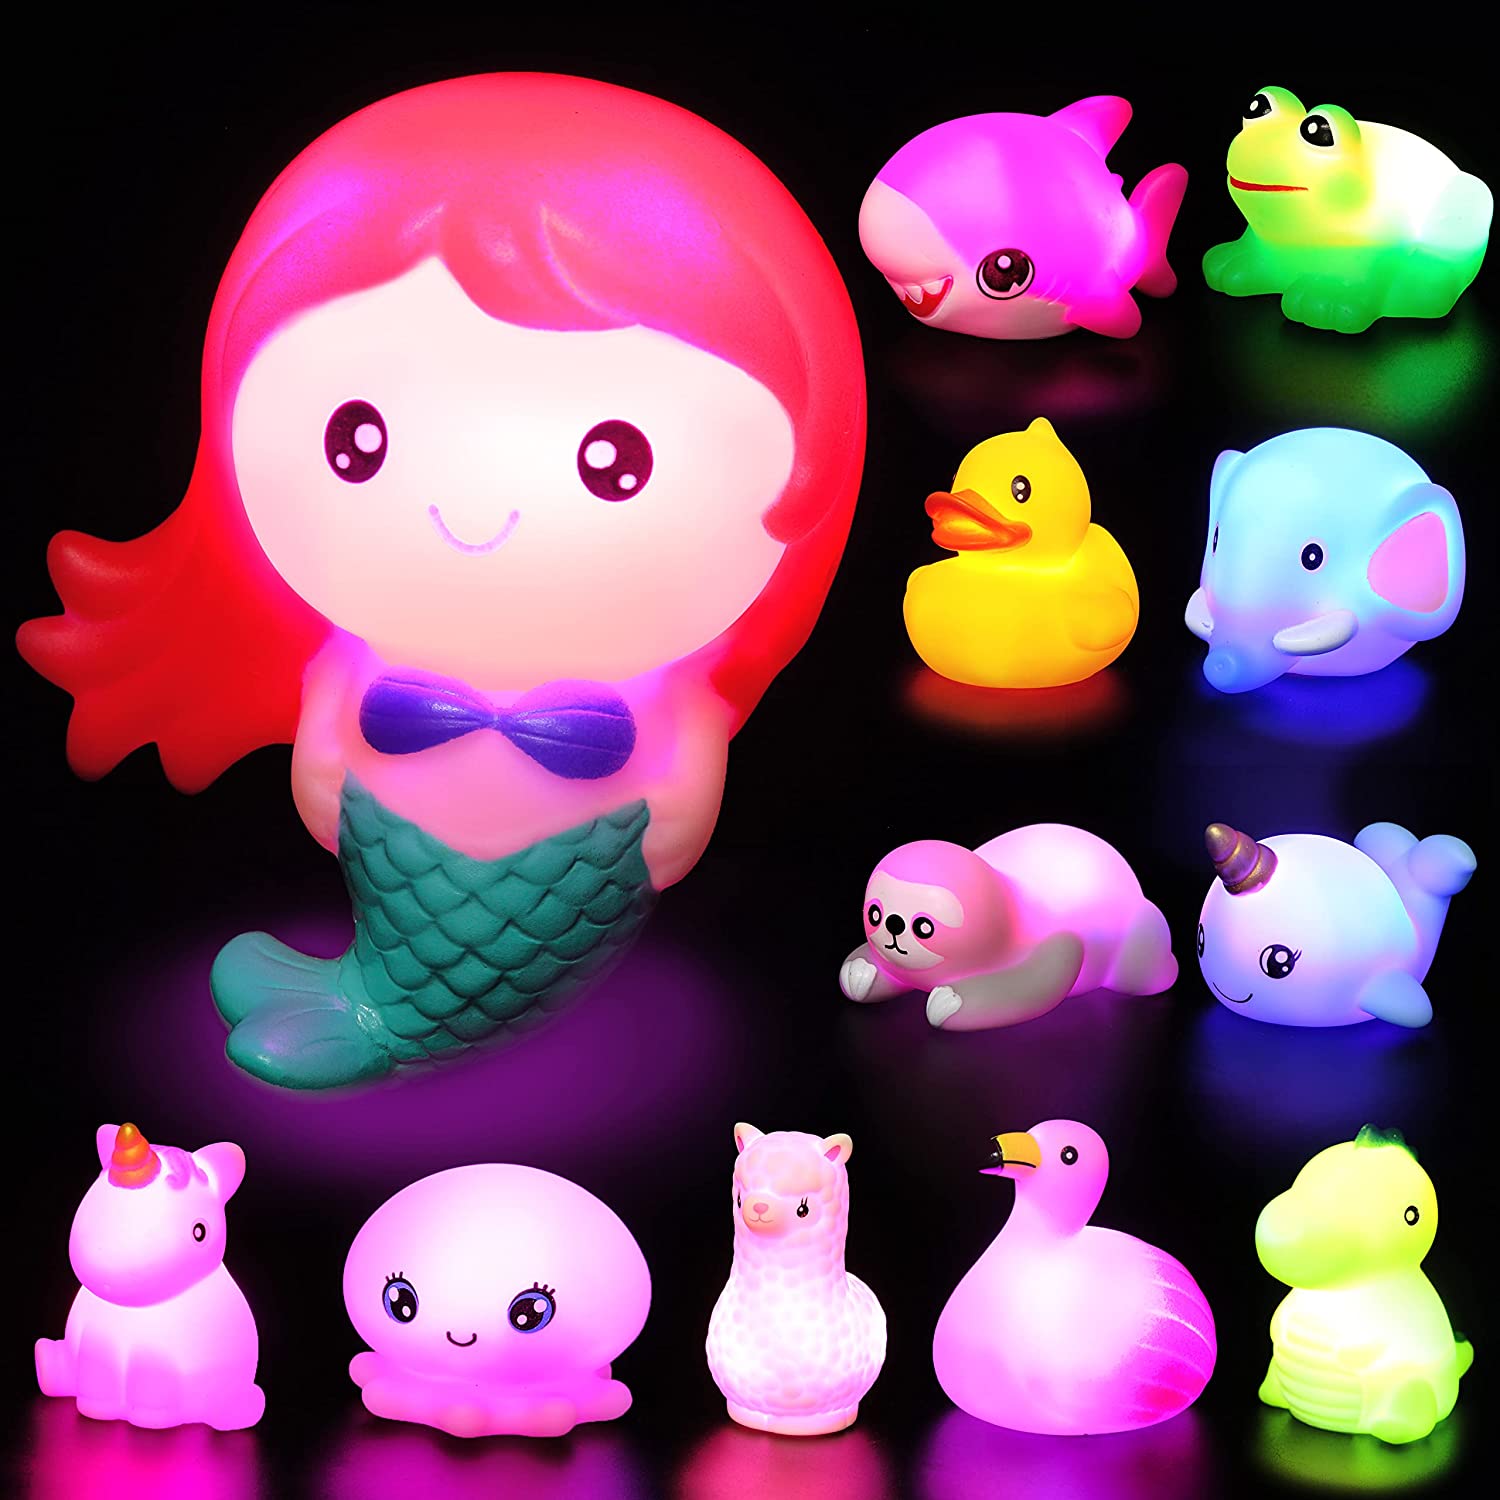 JOYIN 8pcs Light Up Dinosaur Toys, Baby Bath Toy, Toddler Flashing Colourful LED Bathtub Toy, Bathtime Floating Soft Rubber Toy for Infant Boy Girl